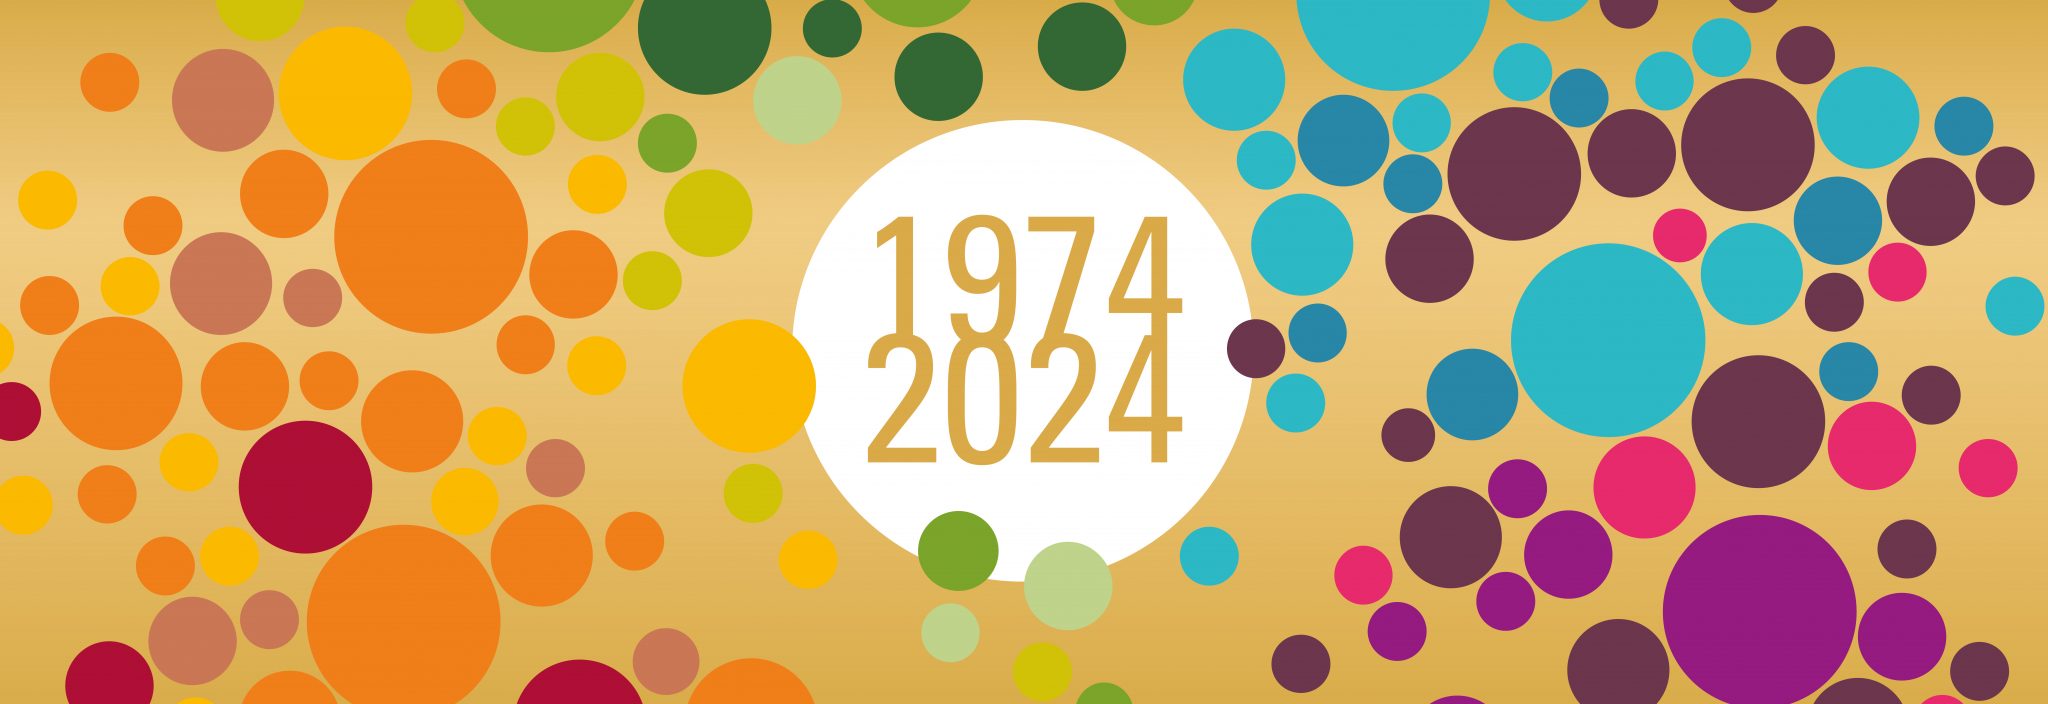 Jahreszahlen 1974 und 2024 zum 50jährigen Jubliäum